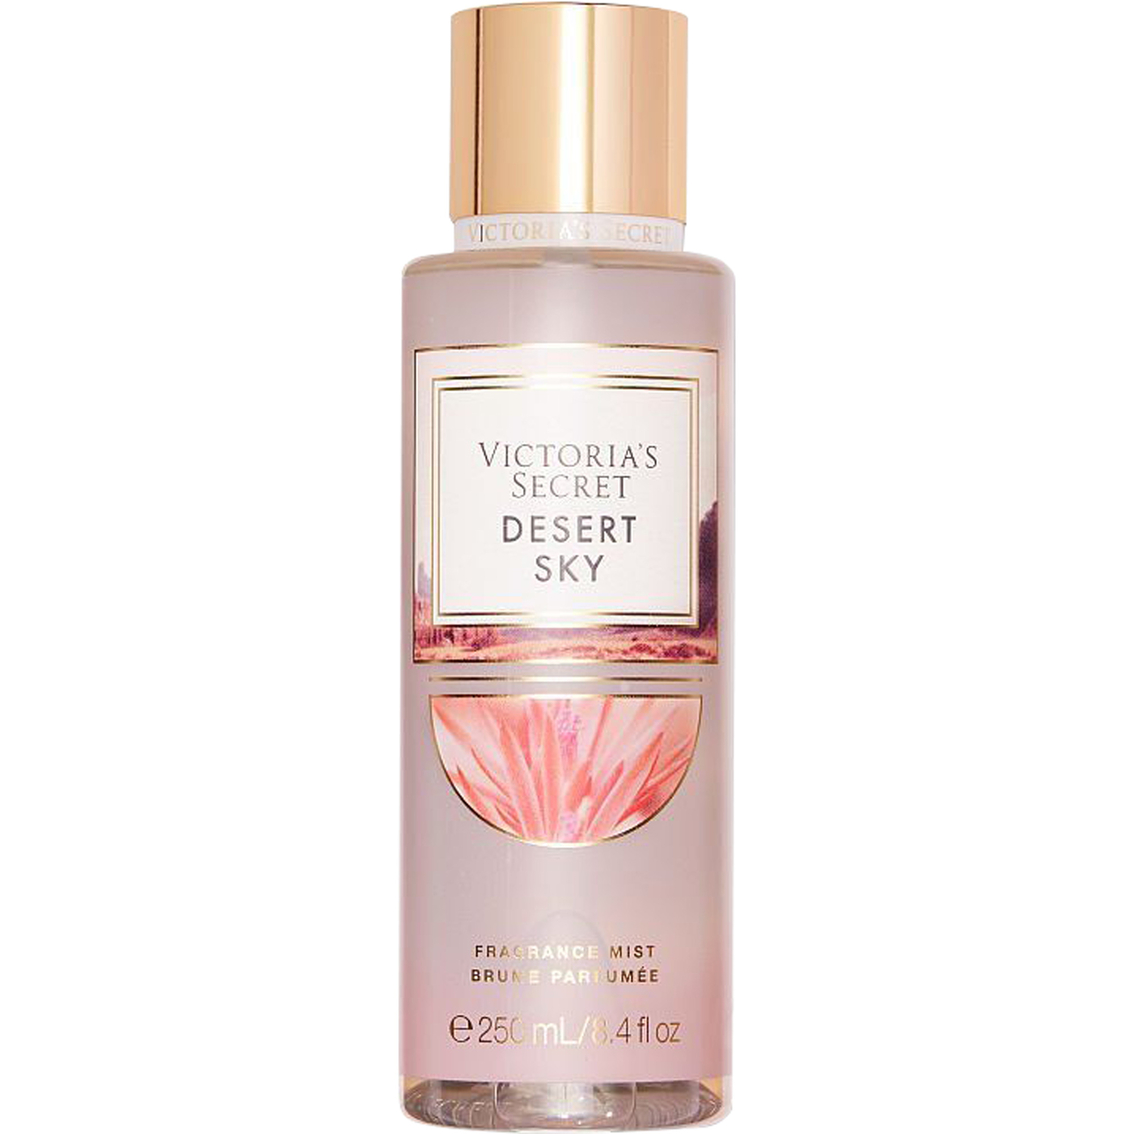 Victoria's Secret Desert Sky Fragrance Mist 8.4 oz.